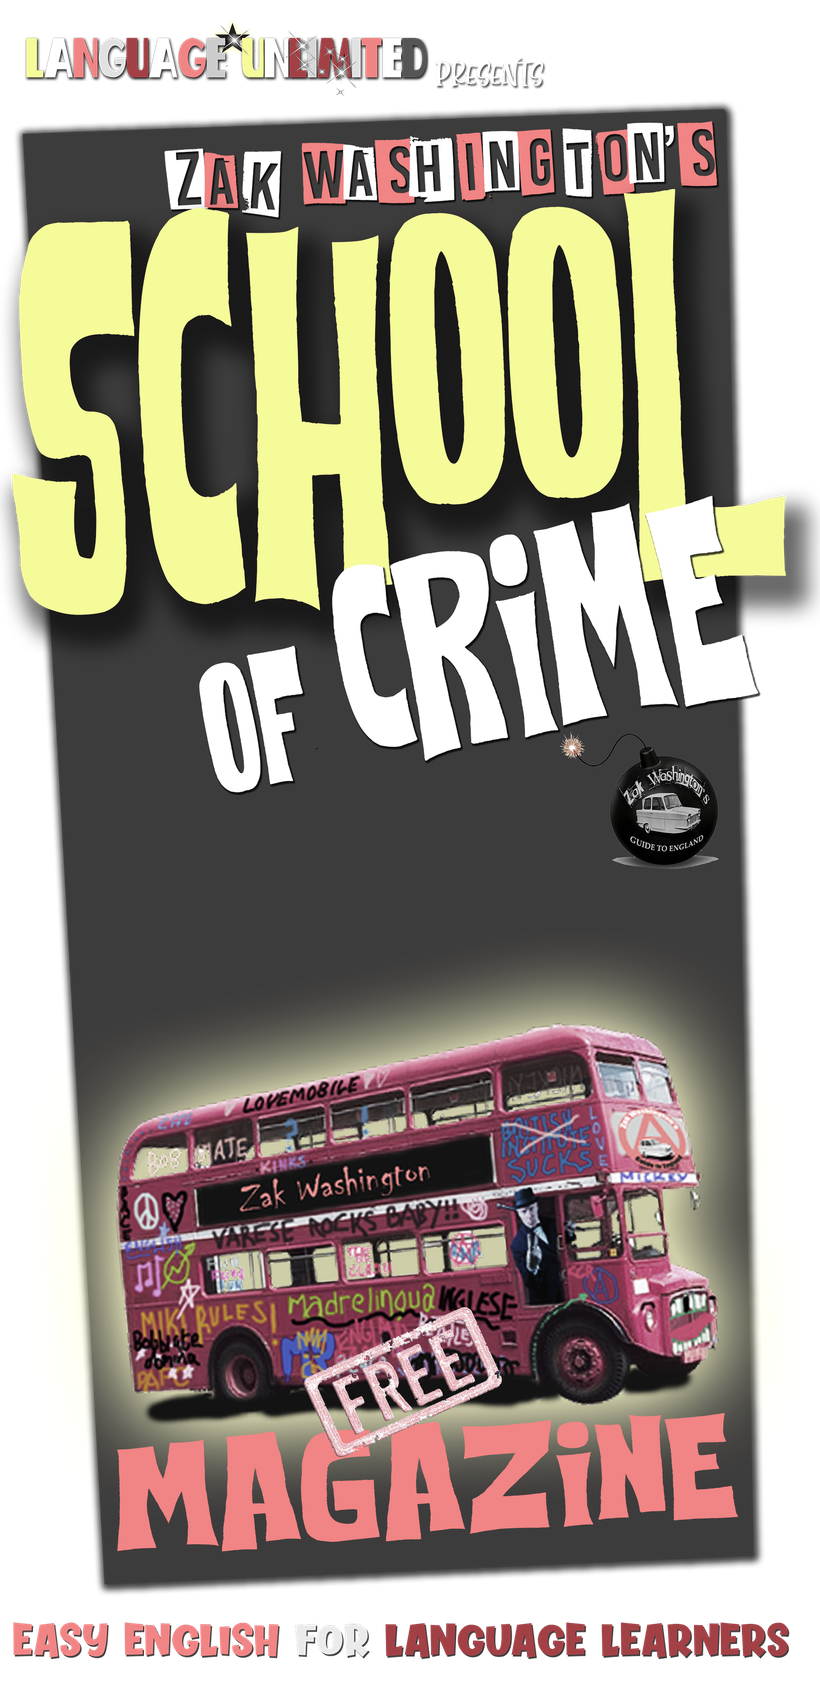 Zak Washington's School of Crime Magazine for English language students